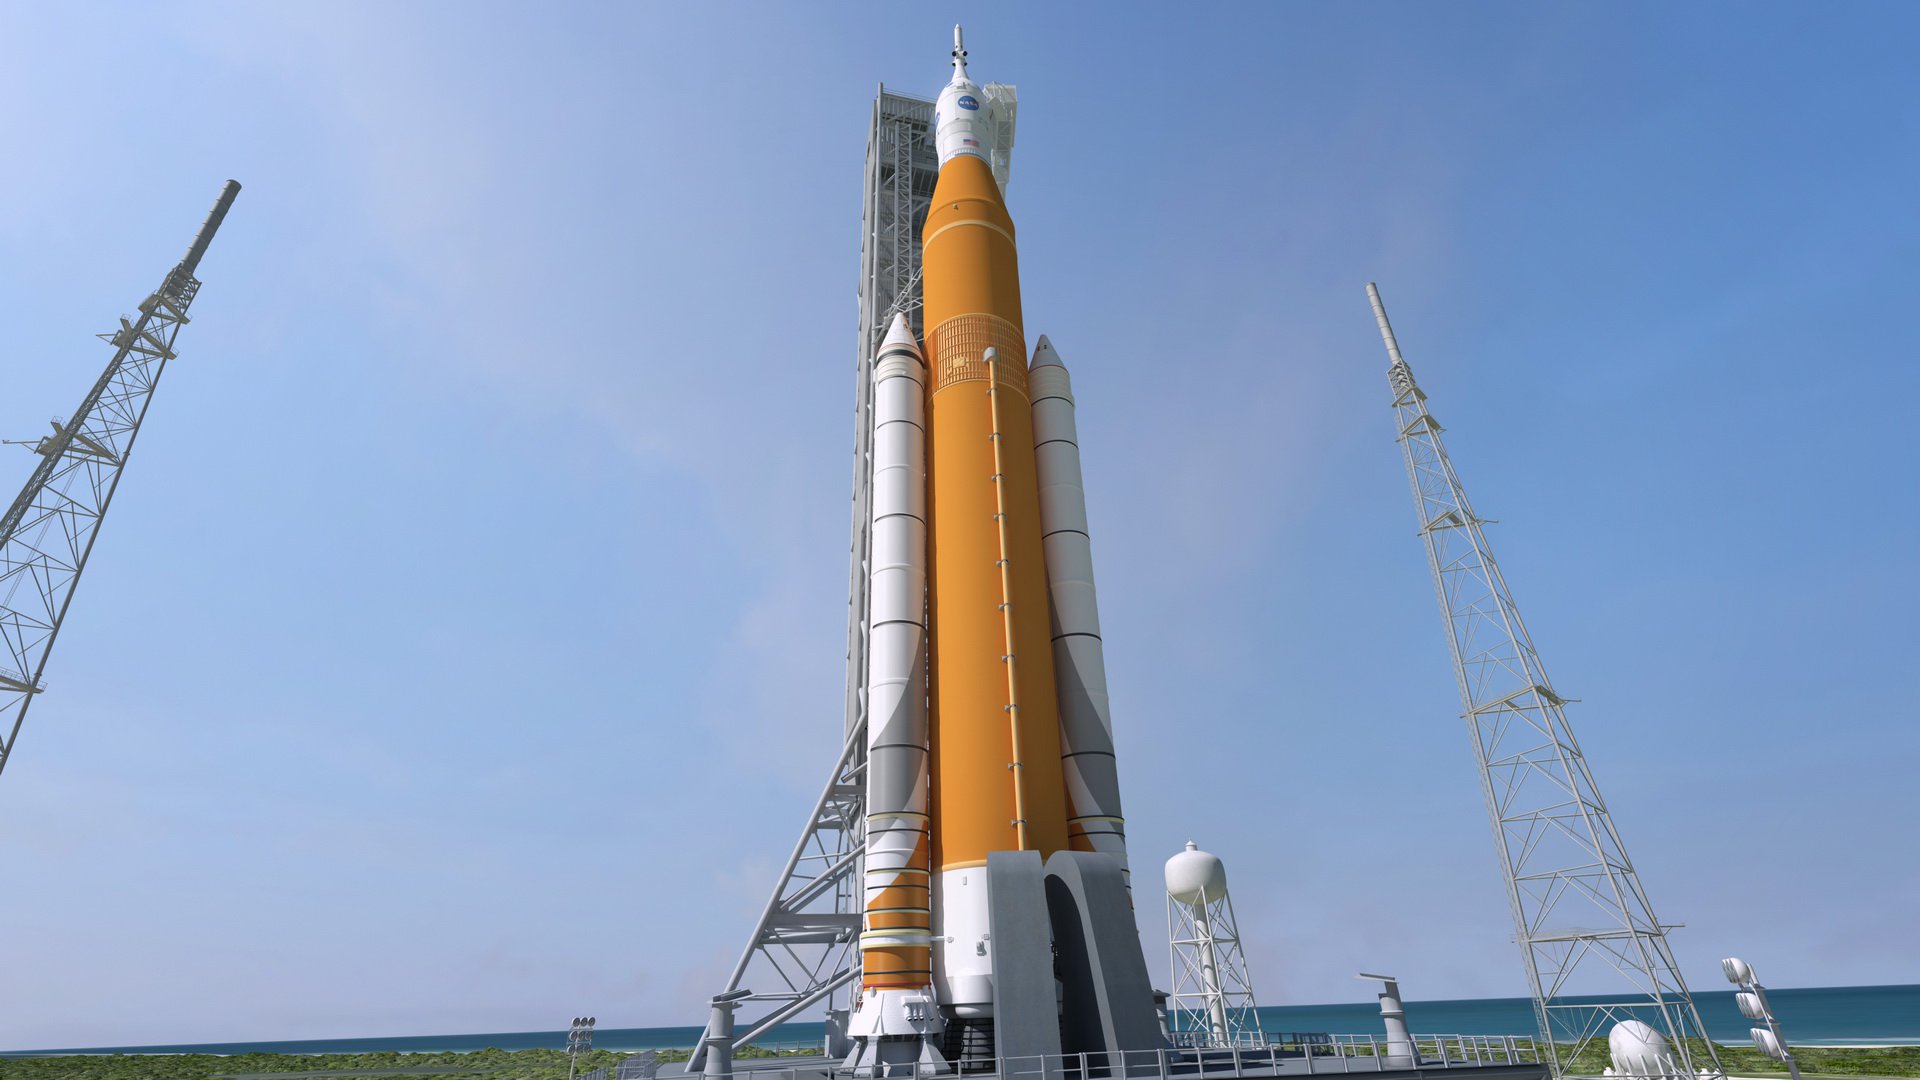 검사 보는 운반 로켓 SLS NASA 는 매우 큰 문제